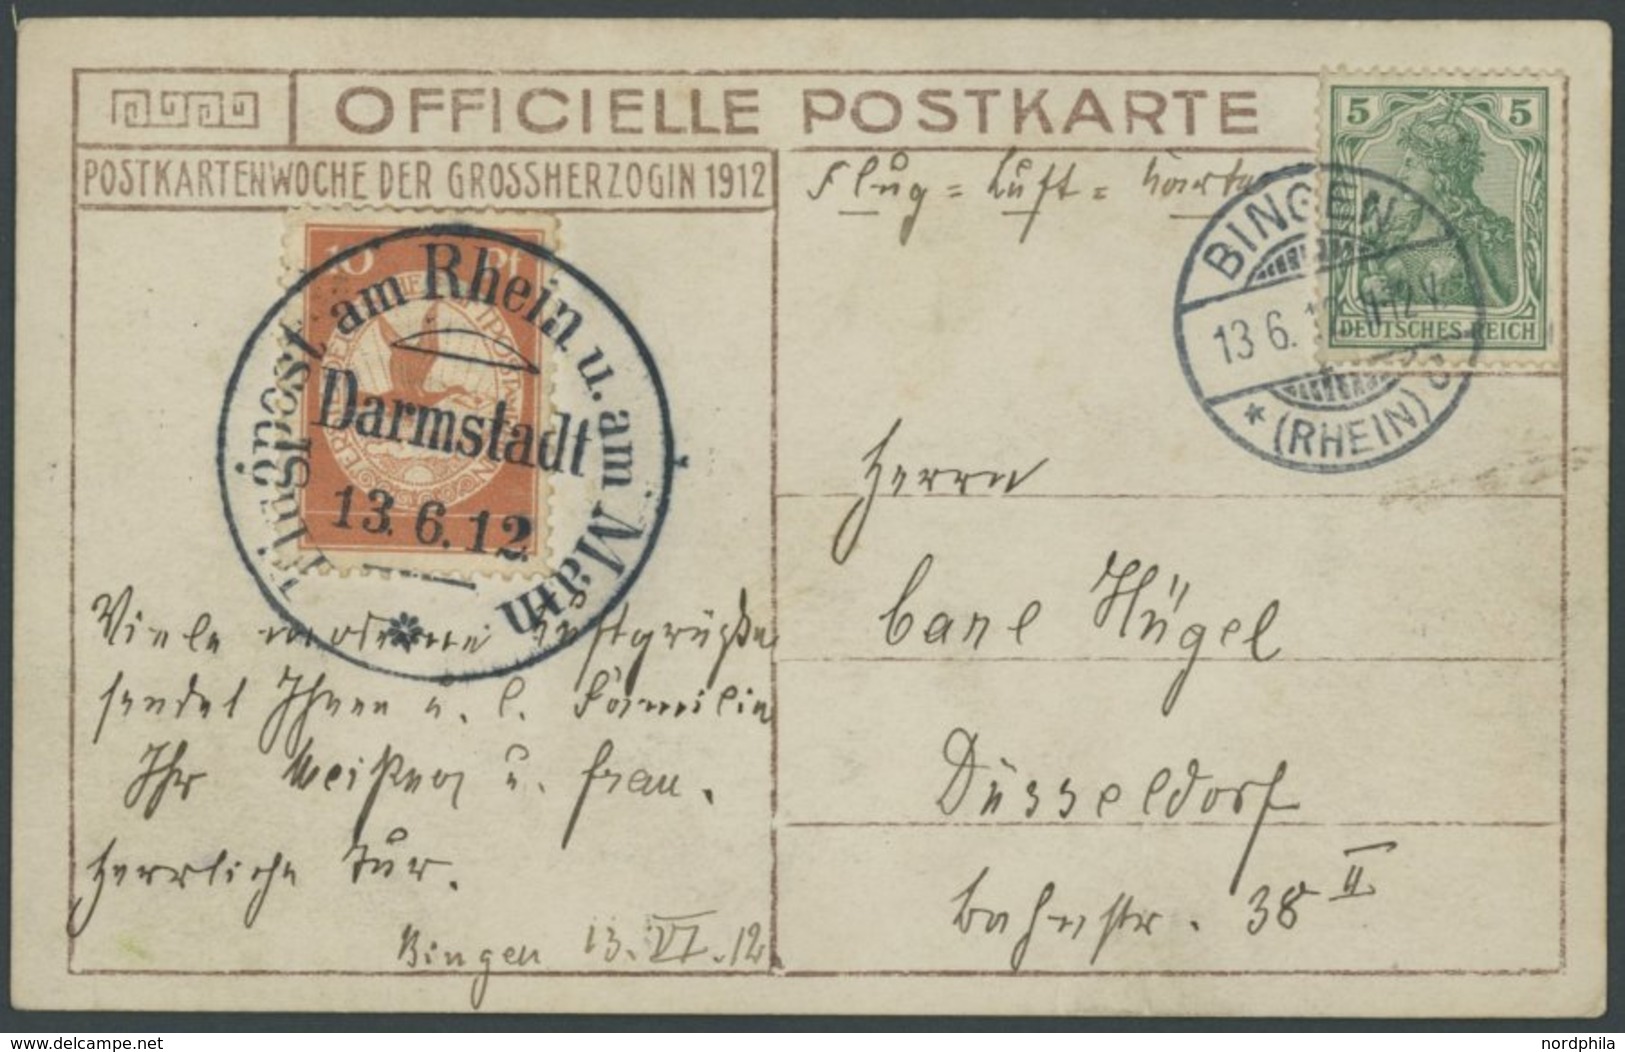 ZEPPELINPOST 10 BRIEF, 1912, 10 Pf. Flp. Am Rhein Und Main Auf Flugpostkarte (Herzogliche Familie) Mit 5 Pf. Zusatzfrank - Airmail & Zeppelin